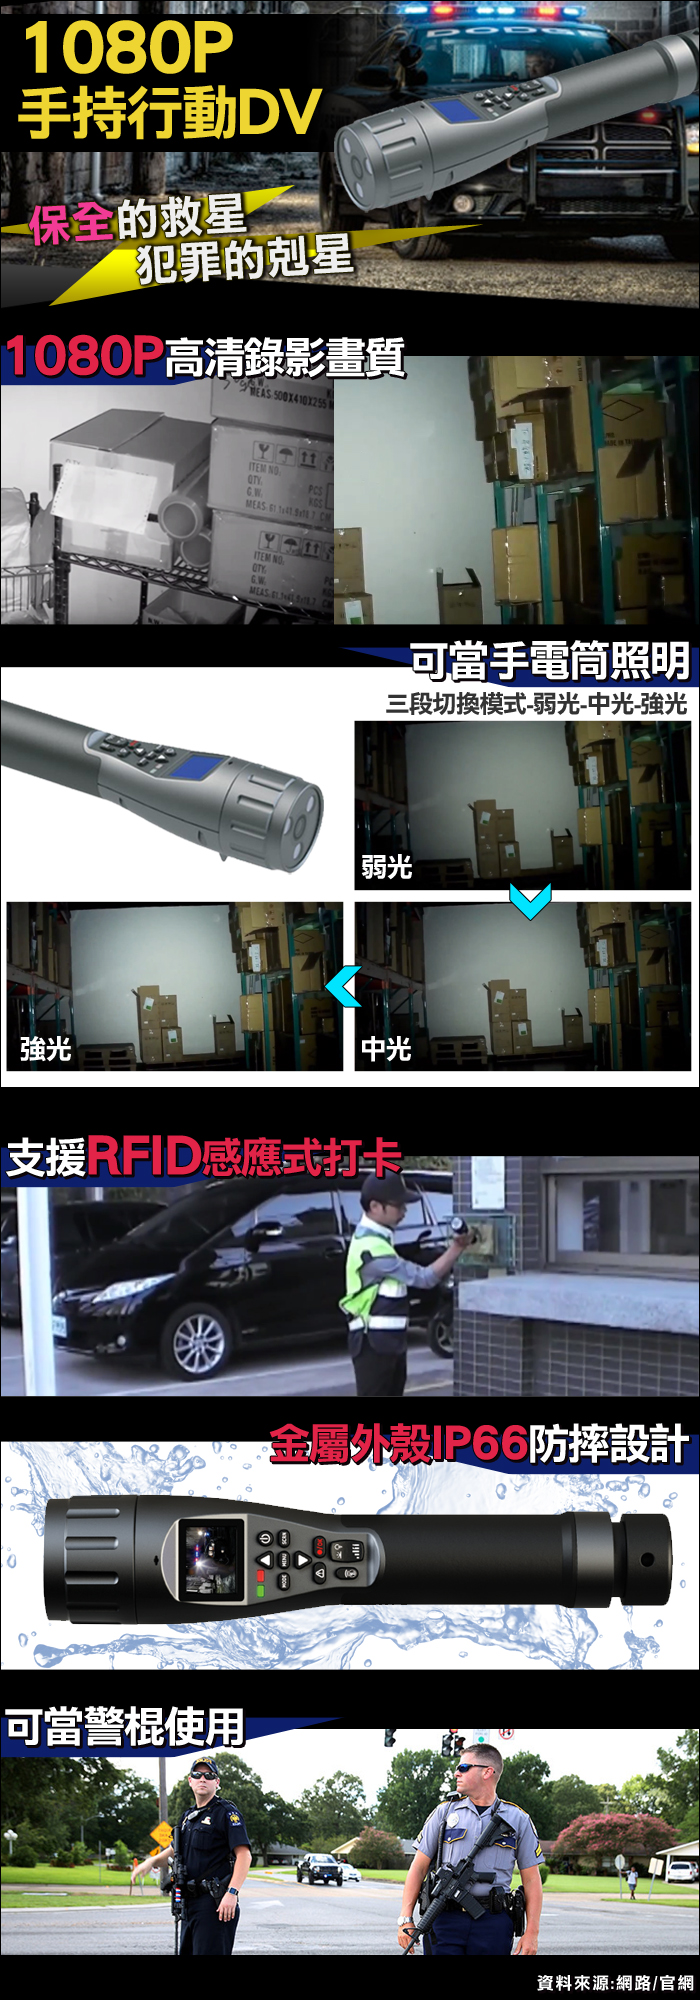 監視器攝影機 KINGNET 1080P 手持移動式行動紀錄器 RFID打卡 夜視功能 IP66金屬防水 台灣精品 保全巡邏